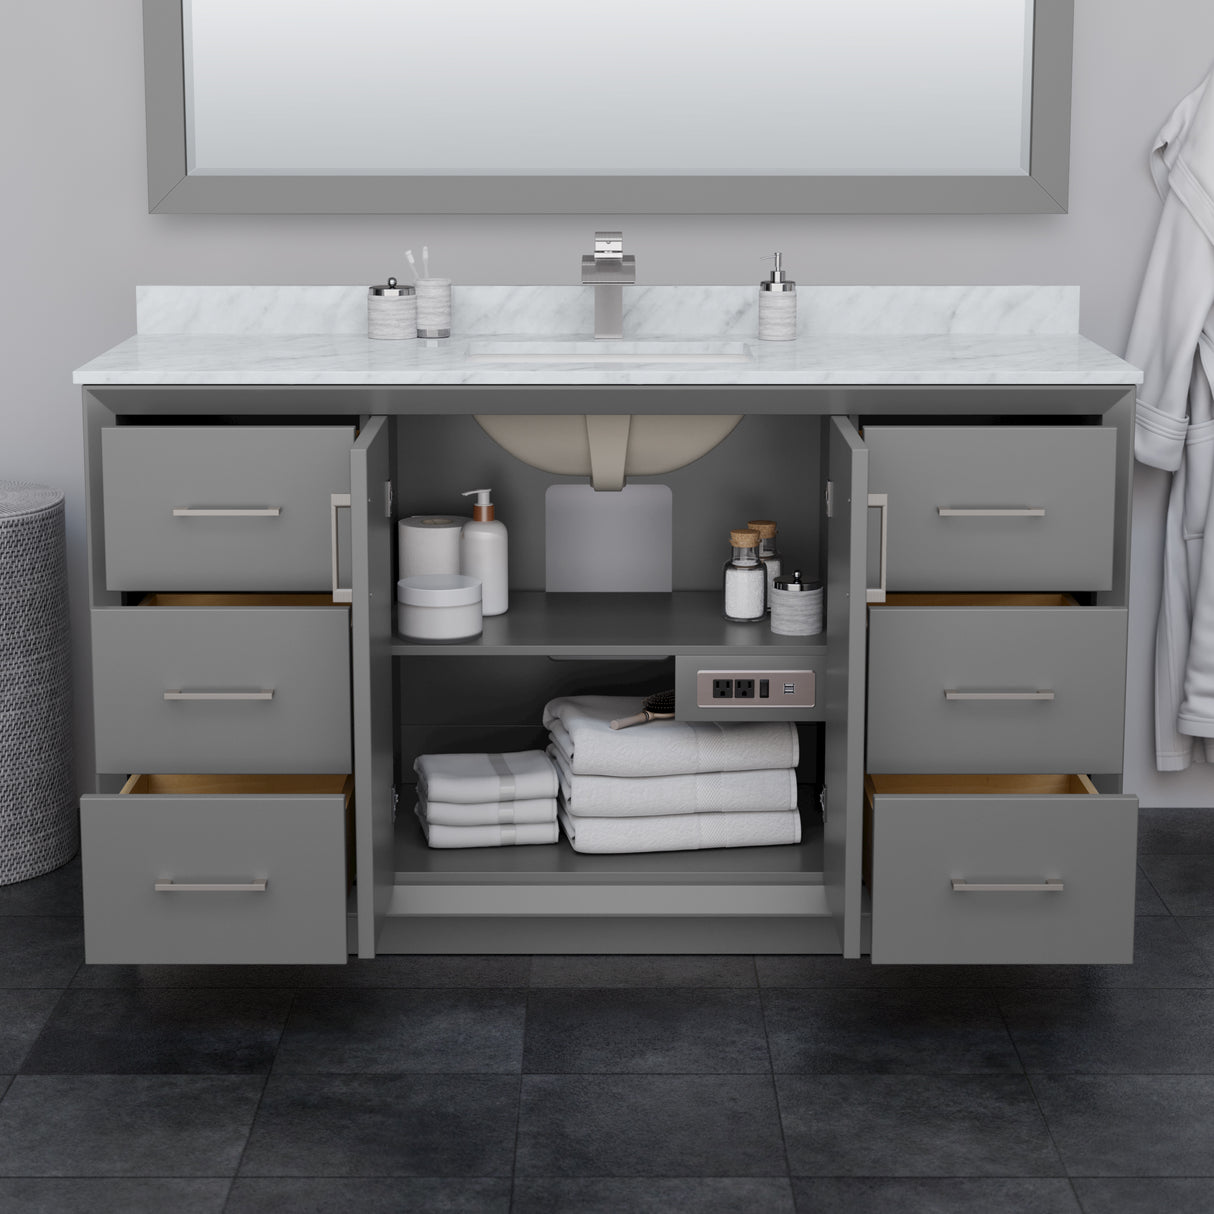 Strada 60 Inch Single Bathroom Vanity in Dark Gray No Countertop No Sink Brushed Nickel Trim 58 Inch Mirror